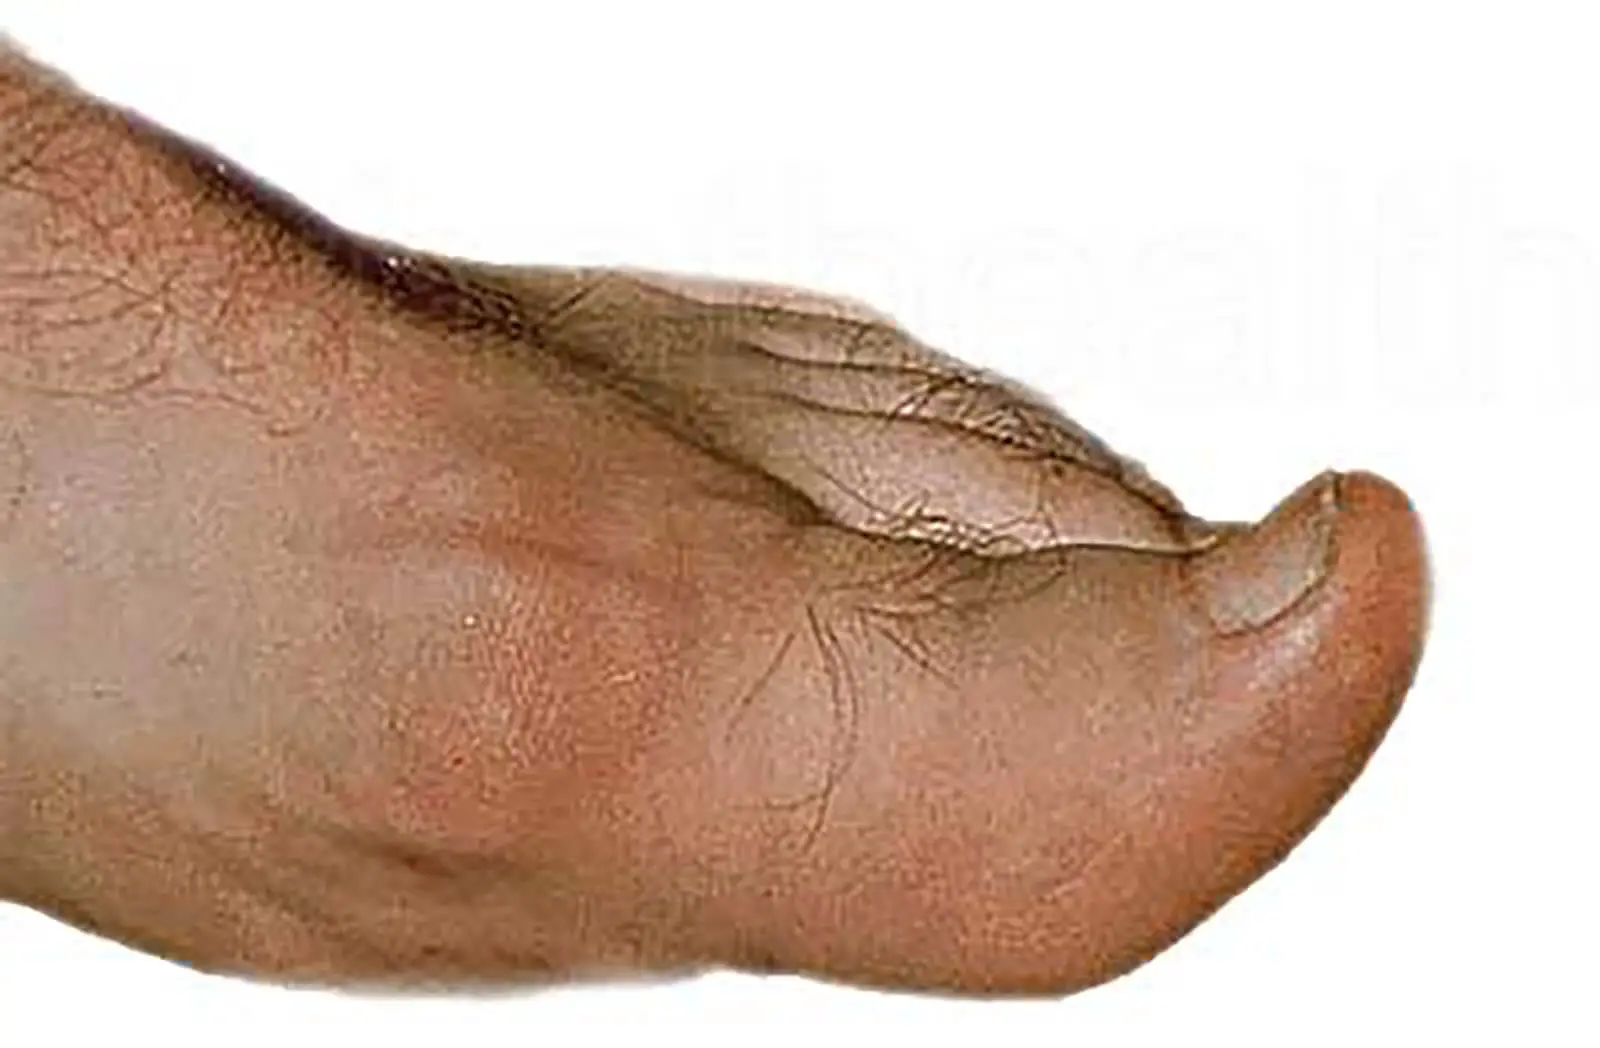 gout-foot.jpg